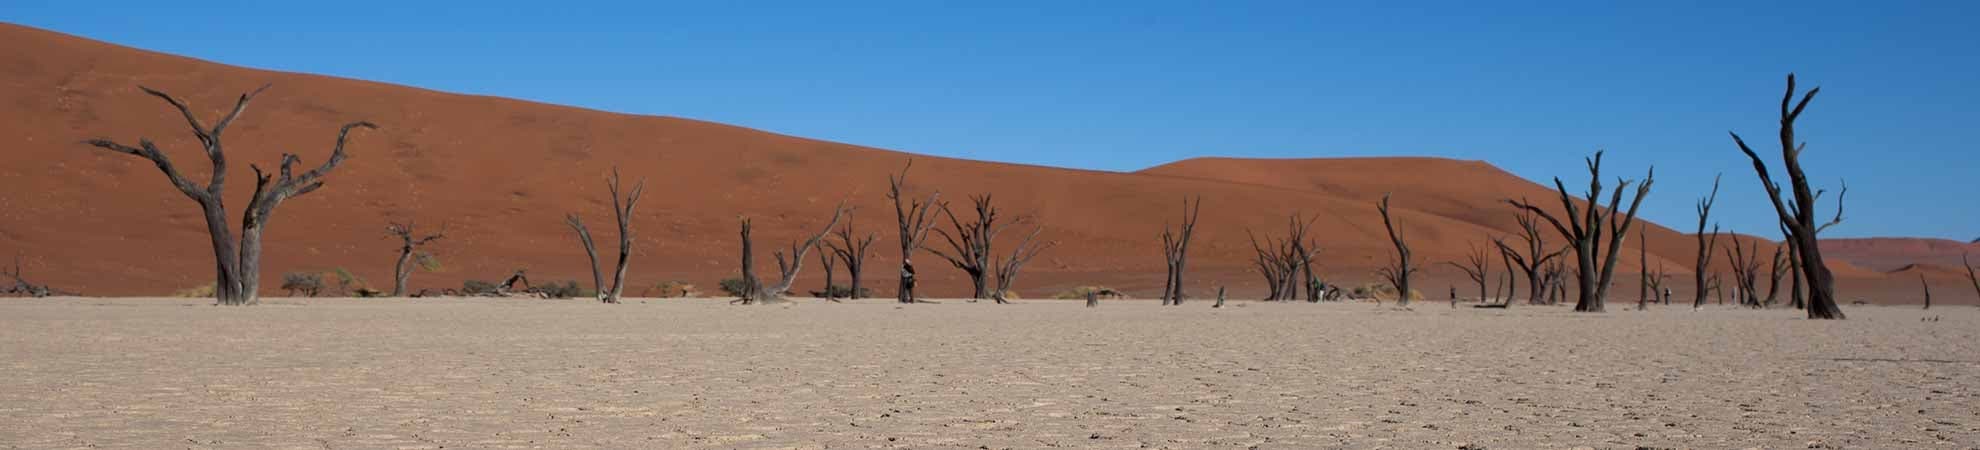 Voyage Le désert de Namib et plaines côtières - Namibie